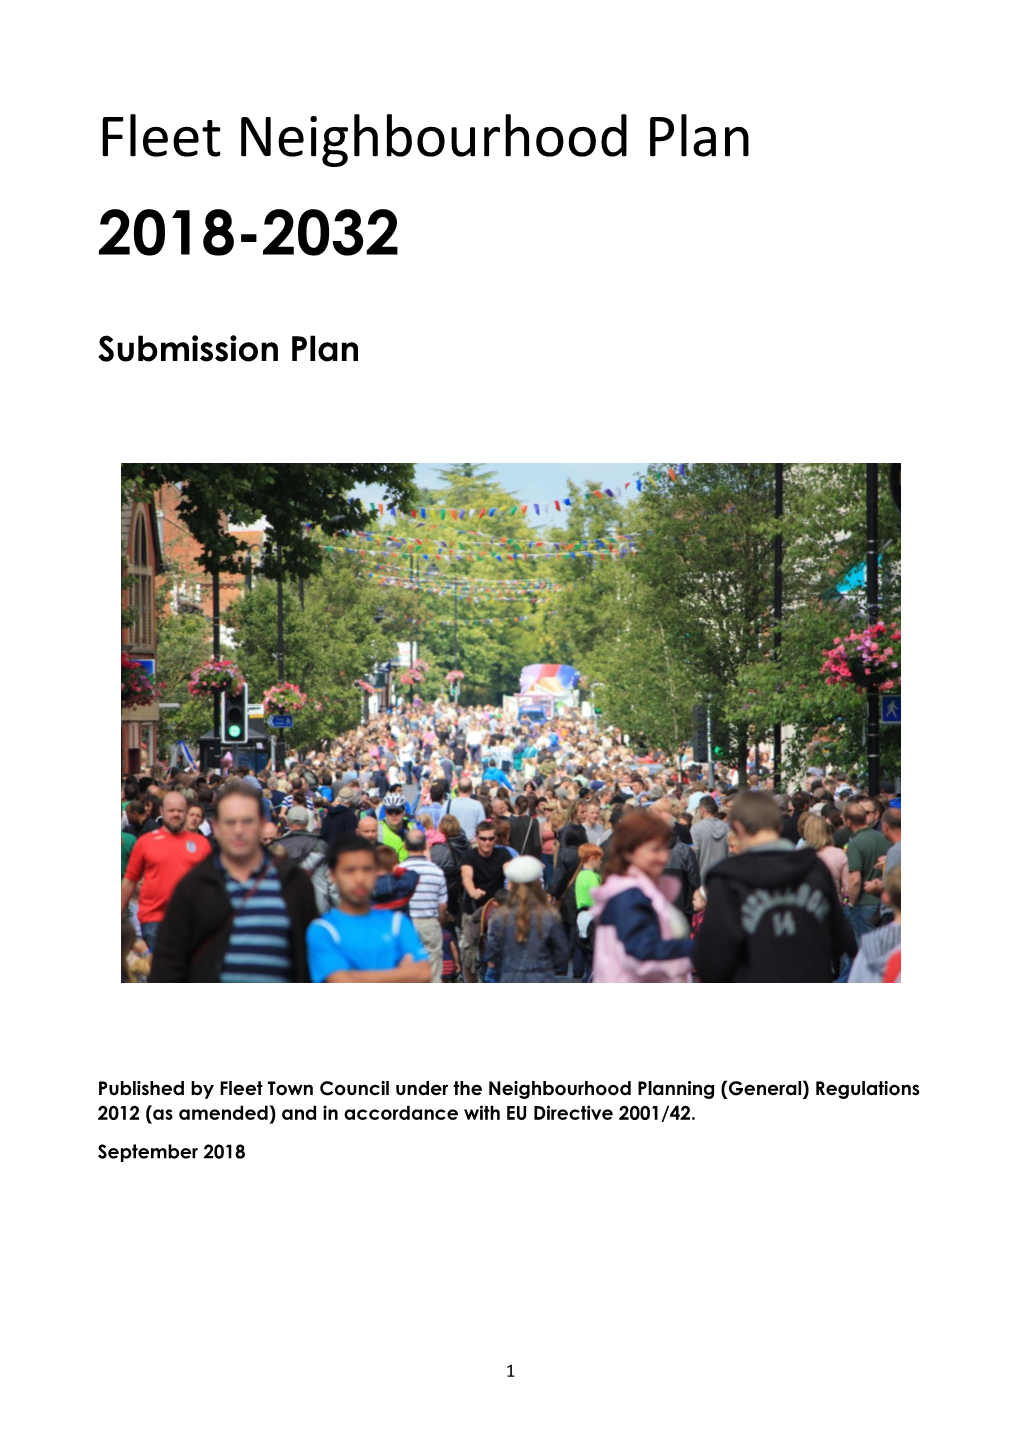 Fleet Neighbourhood Plan 2018-2032